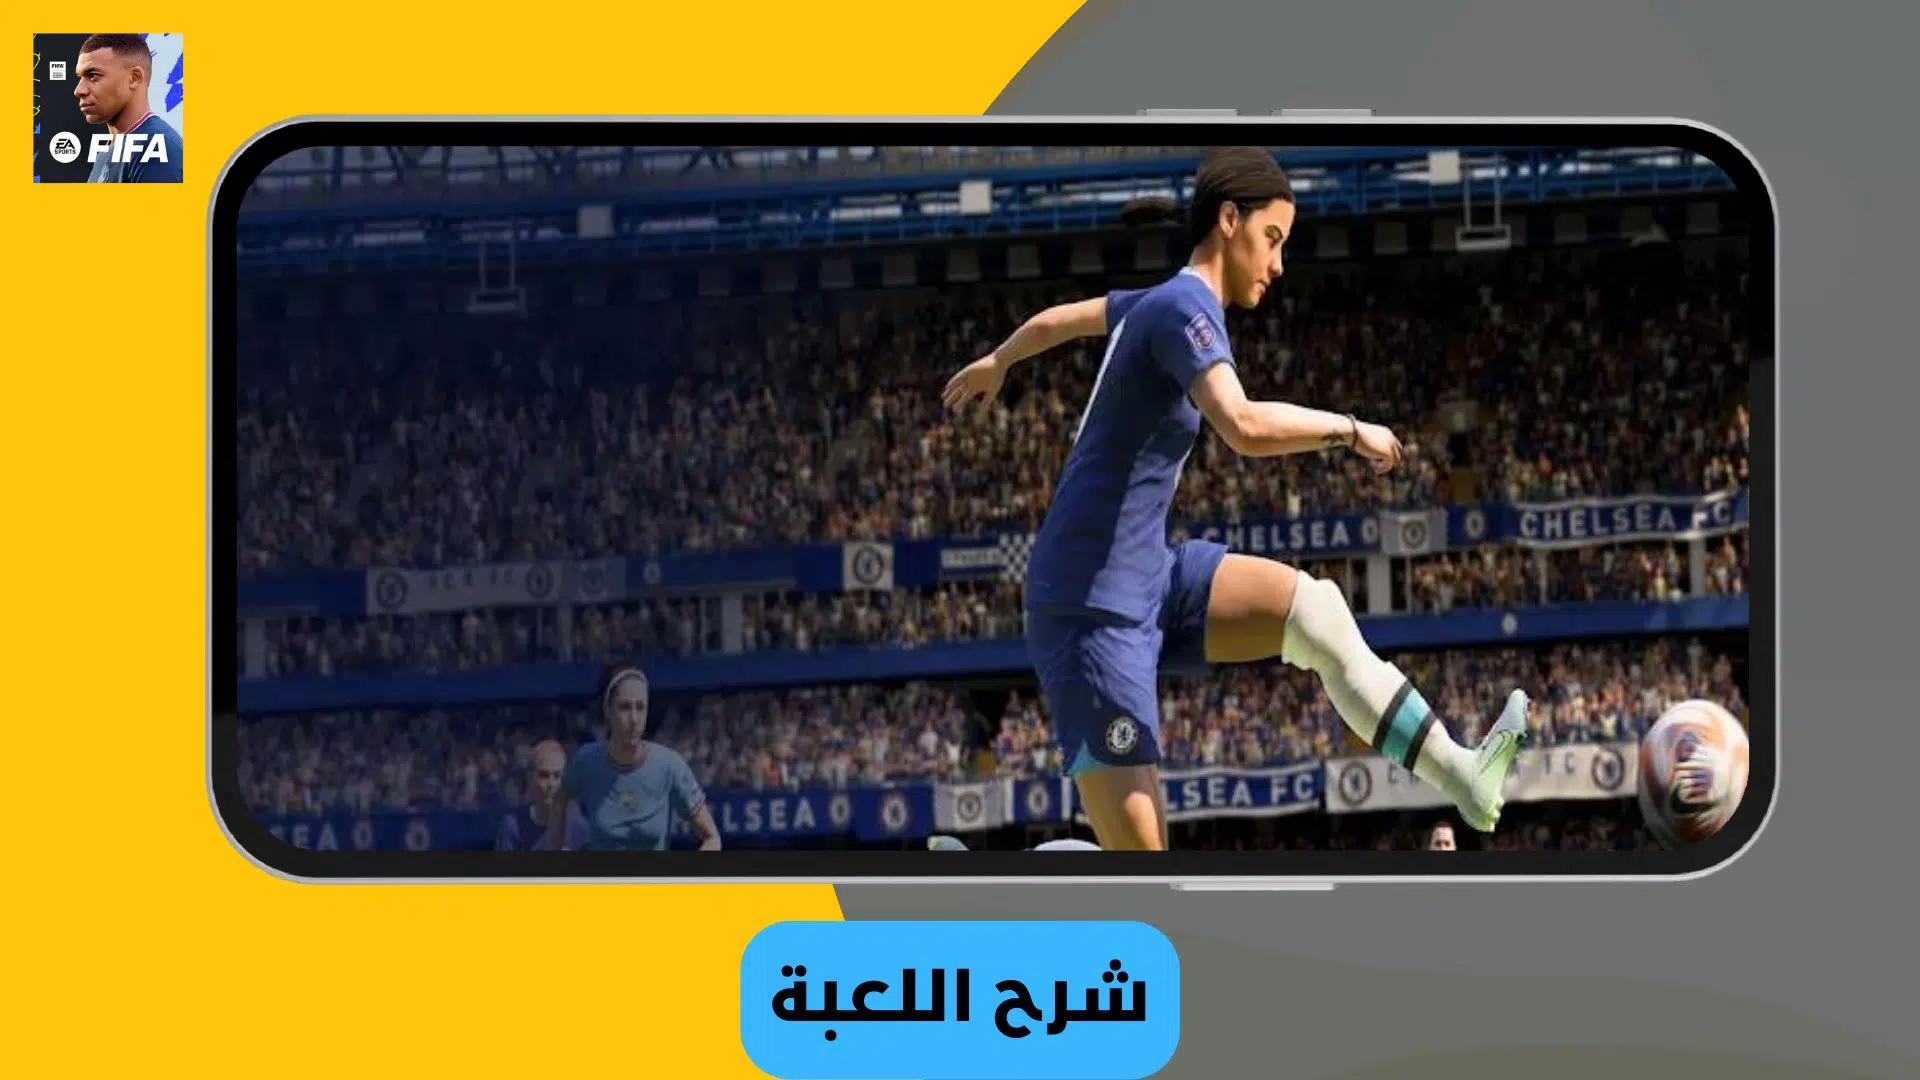 تحميل فيفا 2023 موبايل FIFA 23 Mobile Apk للاندرويد مجانا